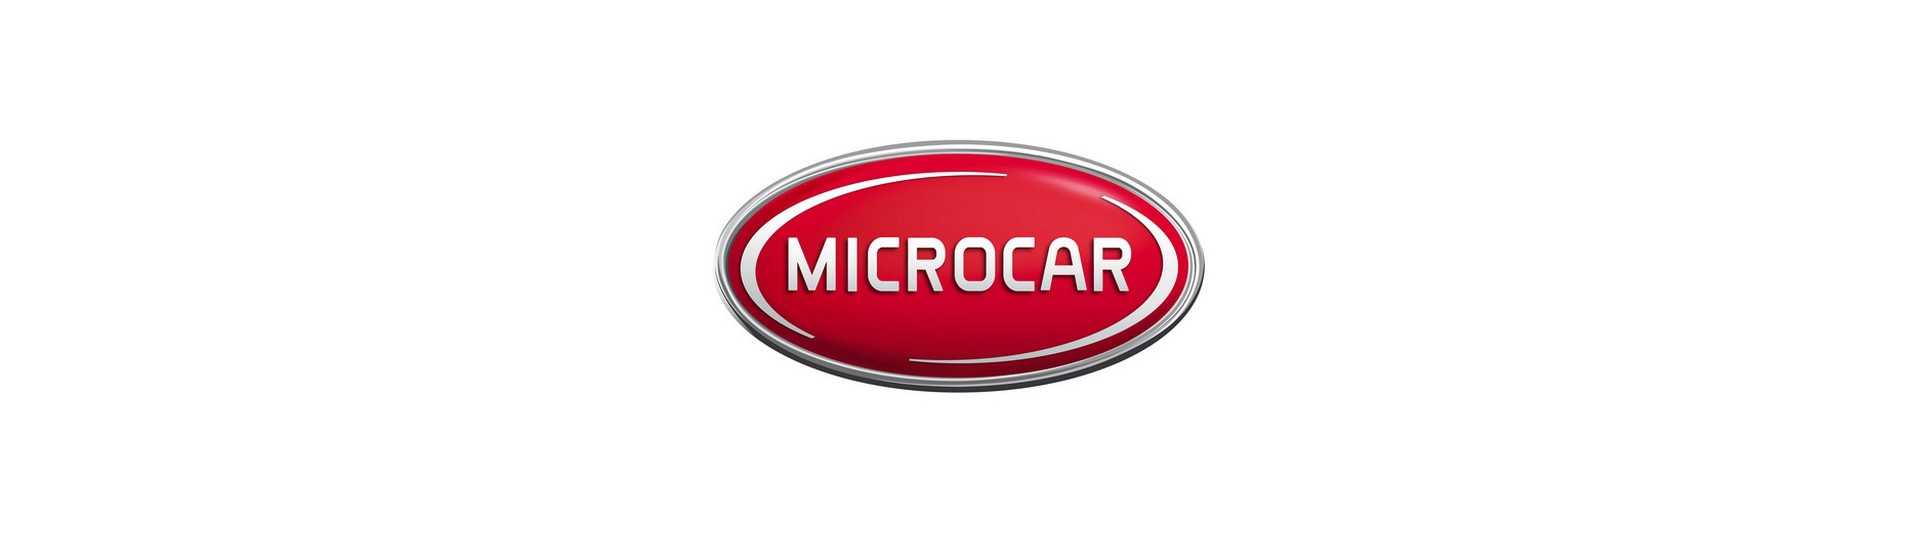 Mejor indicador de precio para coche sin permiso Microcar